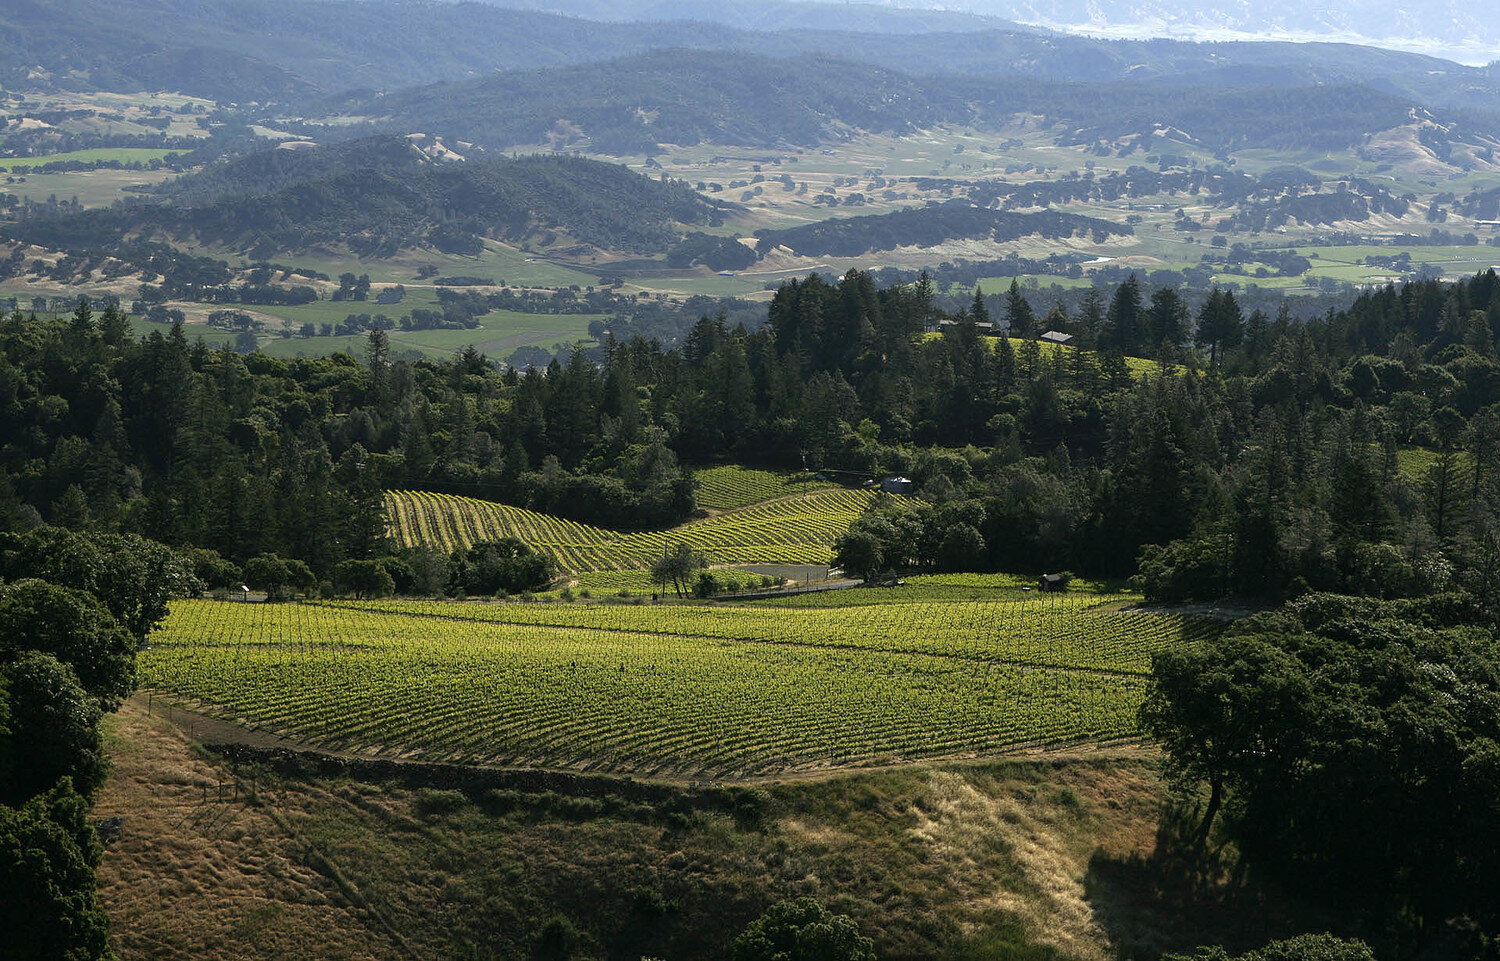 Landscape of Turley vineyards